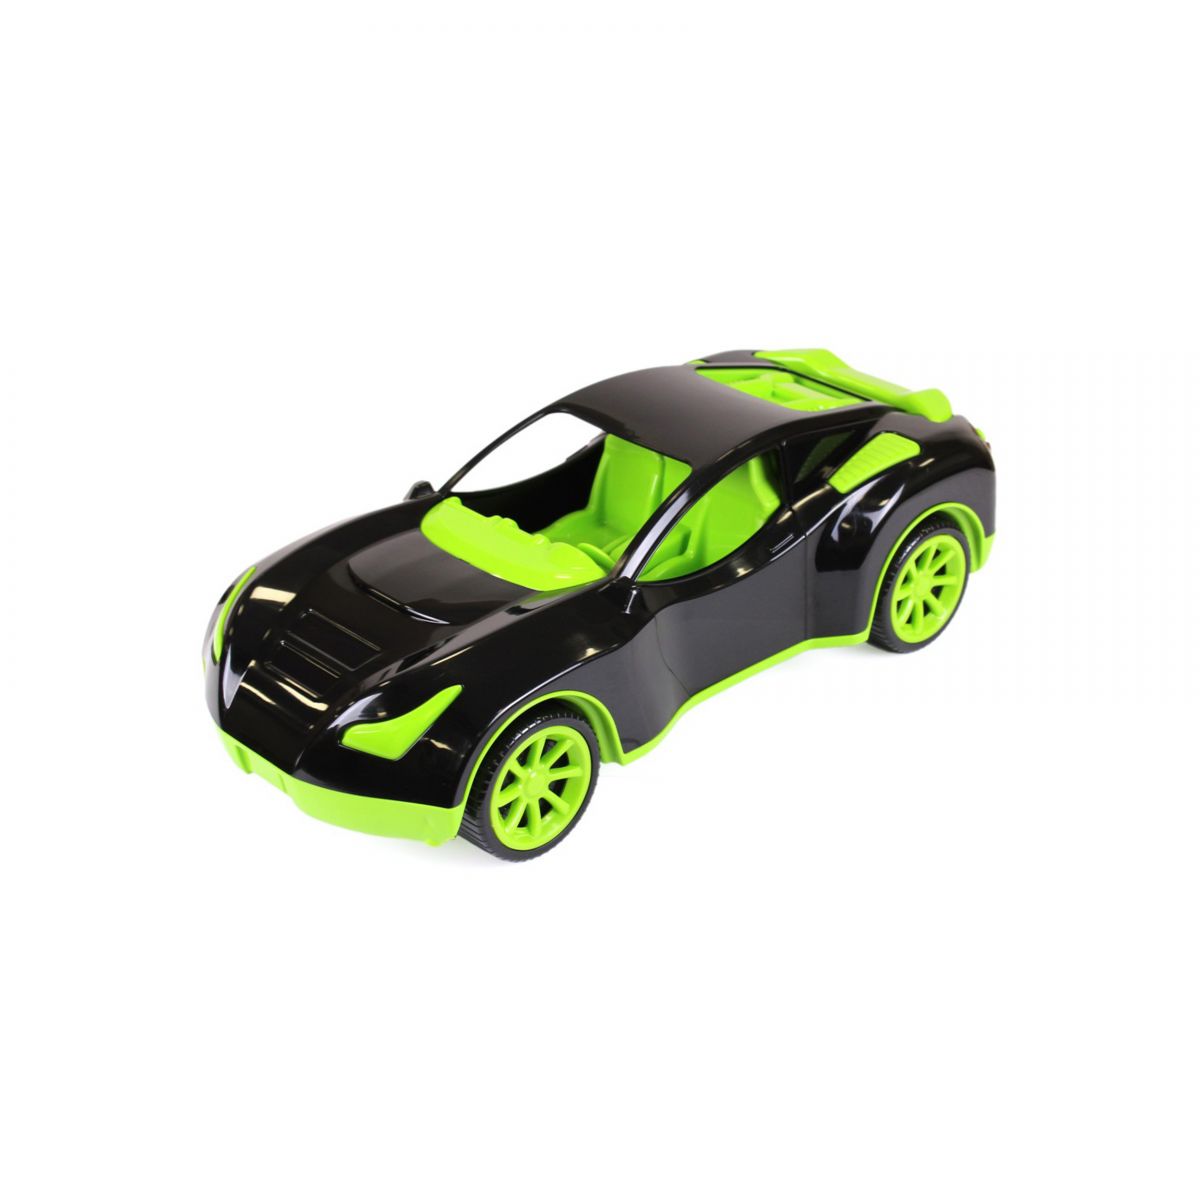 Пластиковая спортивная машина черно-зеленая Технок (6139)